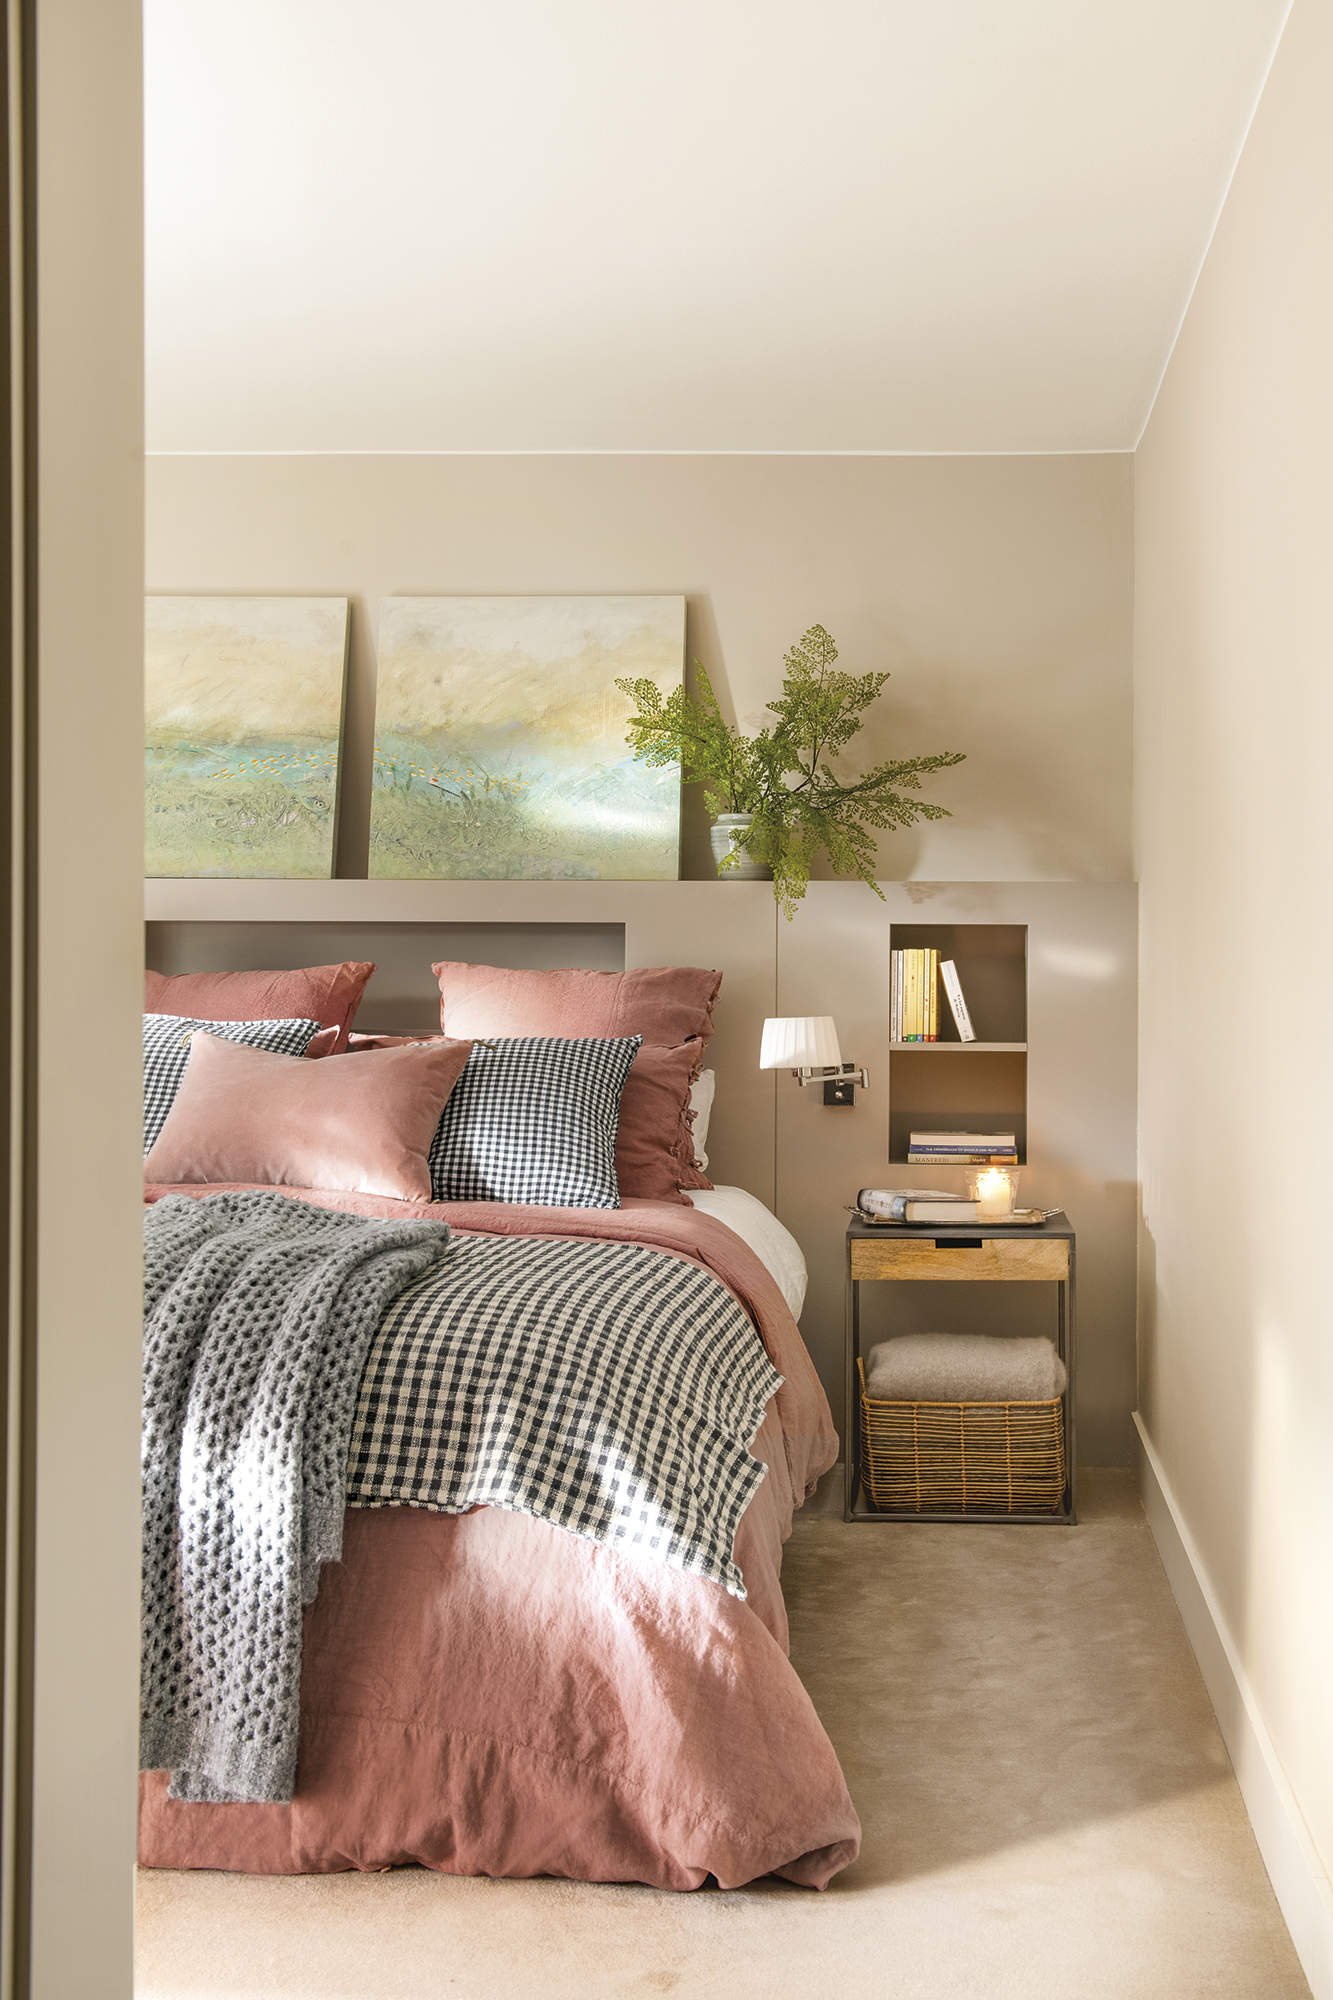 Dormitorio principal con alfombra beige, cama con cabecero de obra, cuadros, ropa de cama rosada y azul a cuadros.